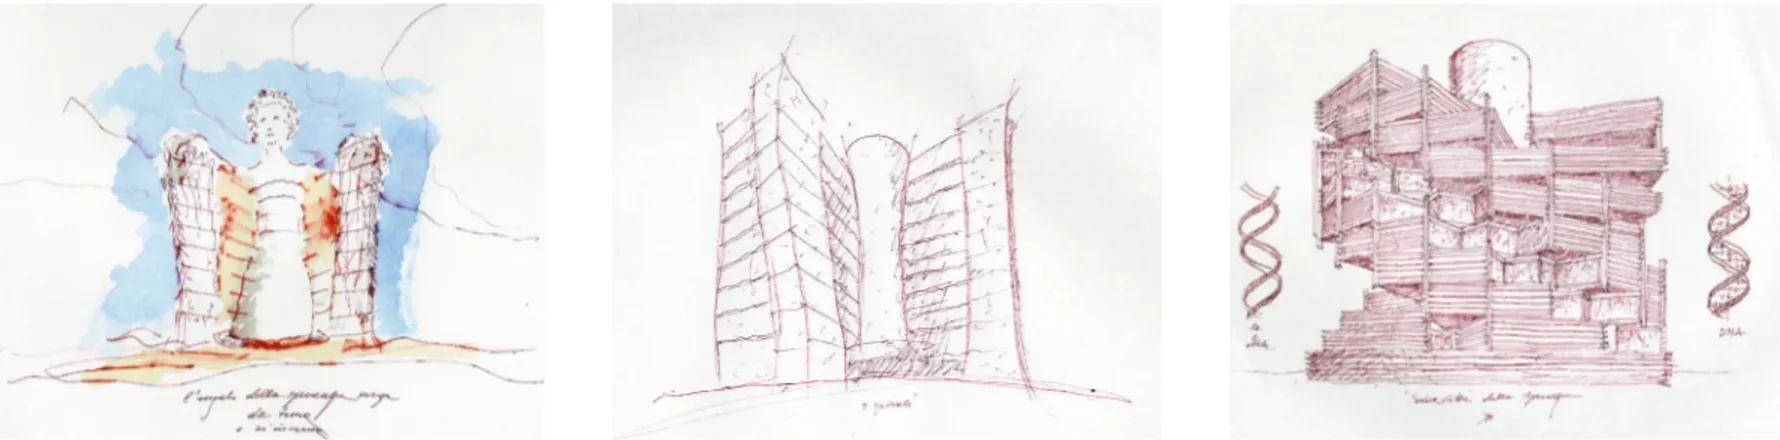 Fig. 19 -  Paolo Portoghesi, la Torre dell’Angelo per il Centro  di  Ricerca  Pediatrica  di  Padova  (2008-2012):